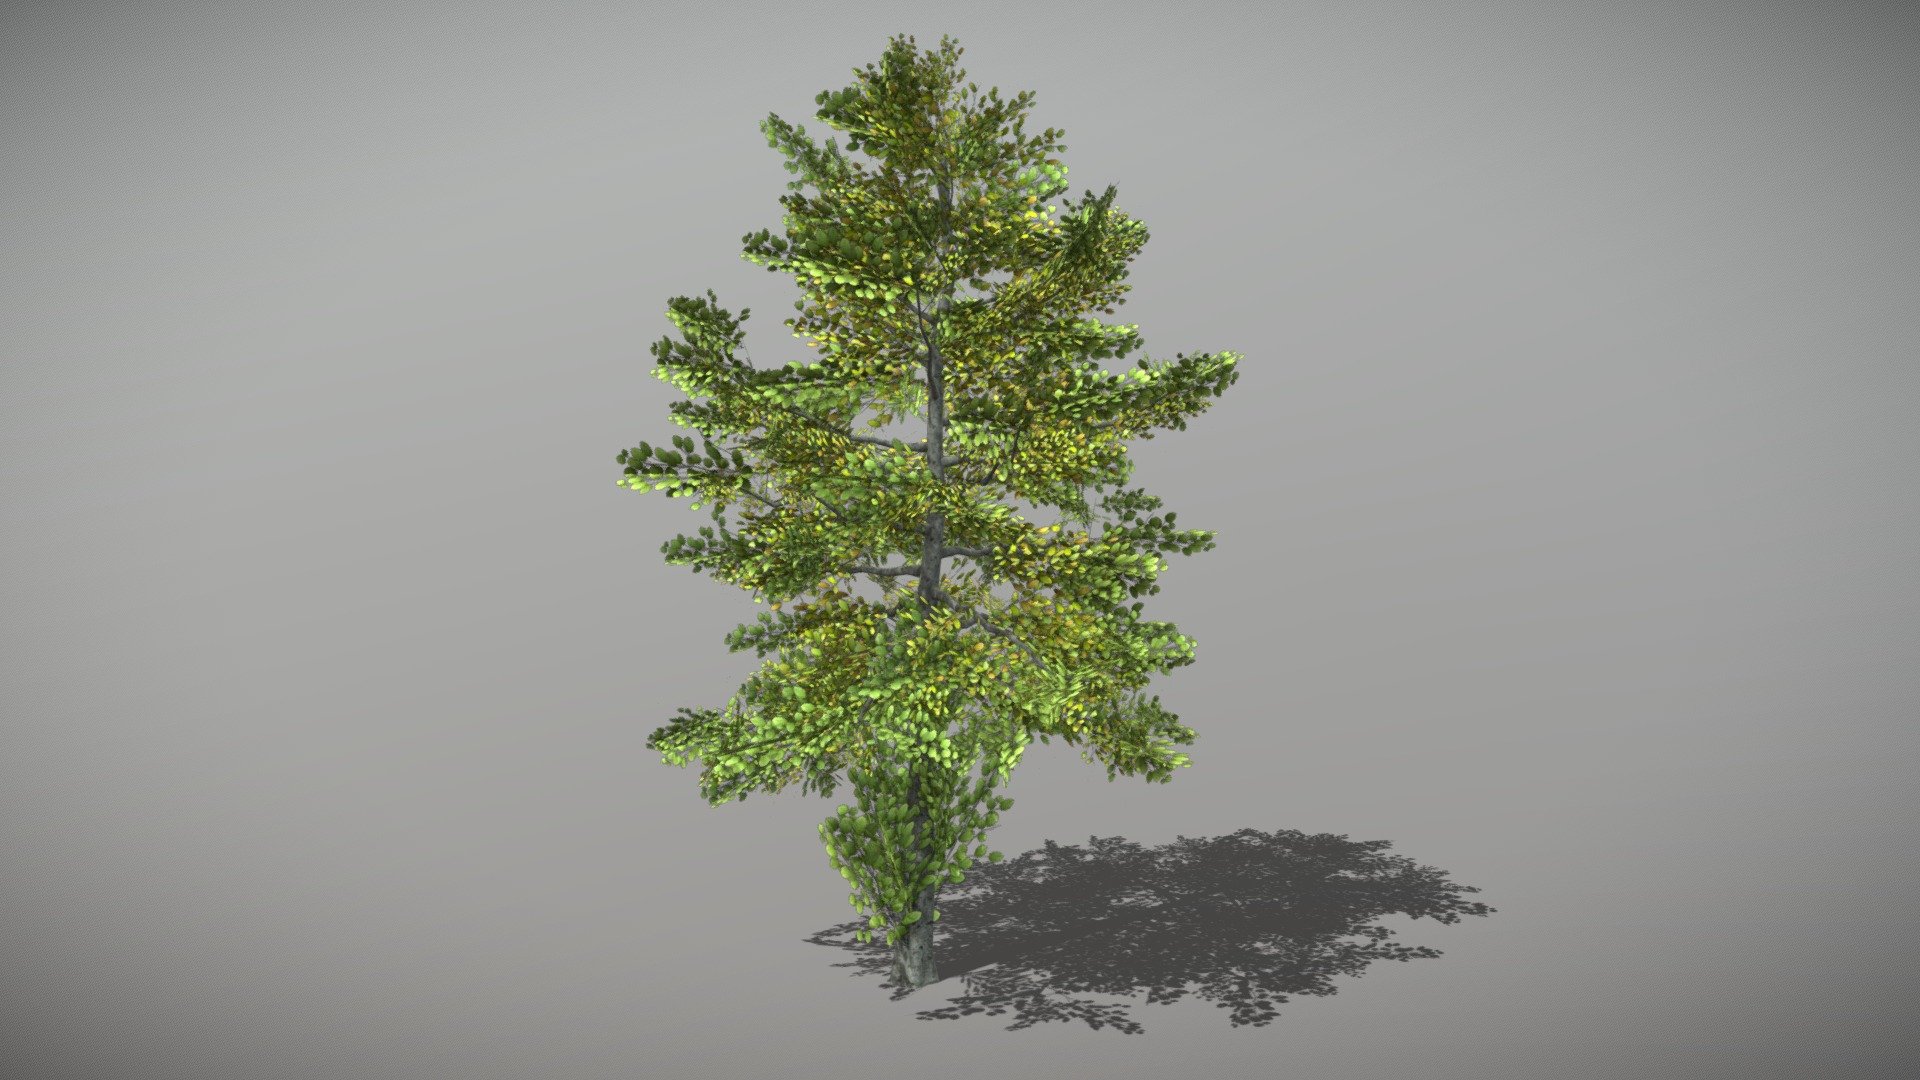 Animated Beech tree + FBX LOD Model

• LOD0 = 4,730 Tris

• LOD1 = 2,733 Tris

• LOD2 = 1,345 Tris
 - Beech 1 (Animated Tree) - Buy Royalty Free 3D model by bsp 3d model